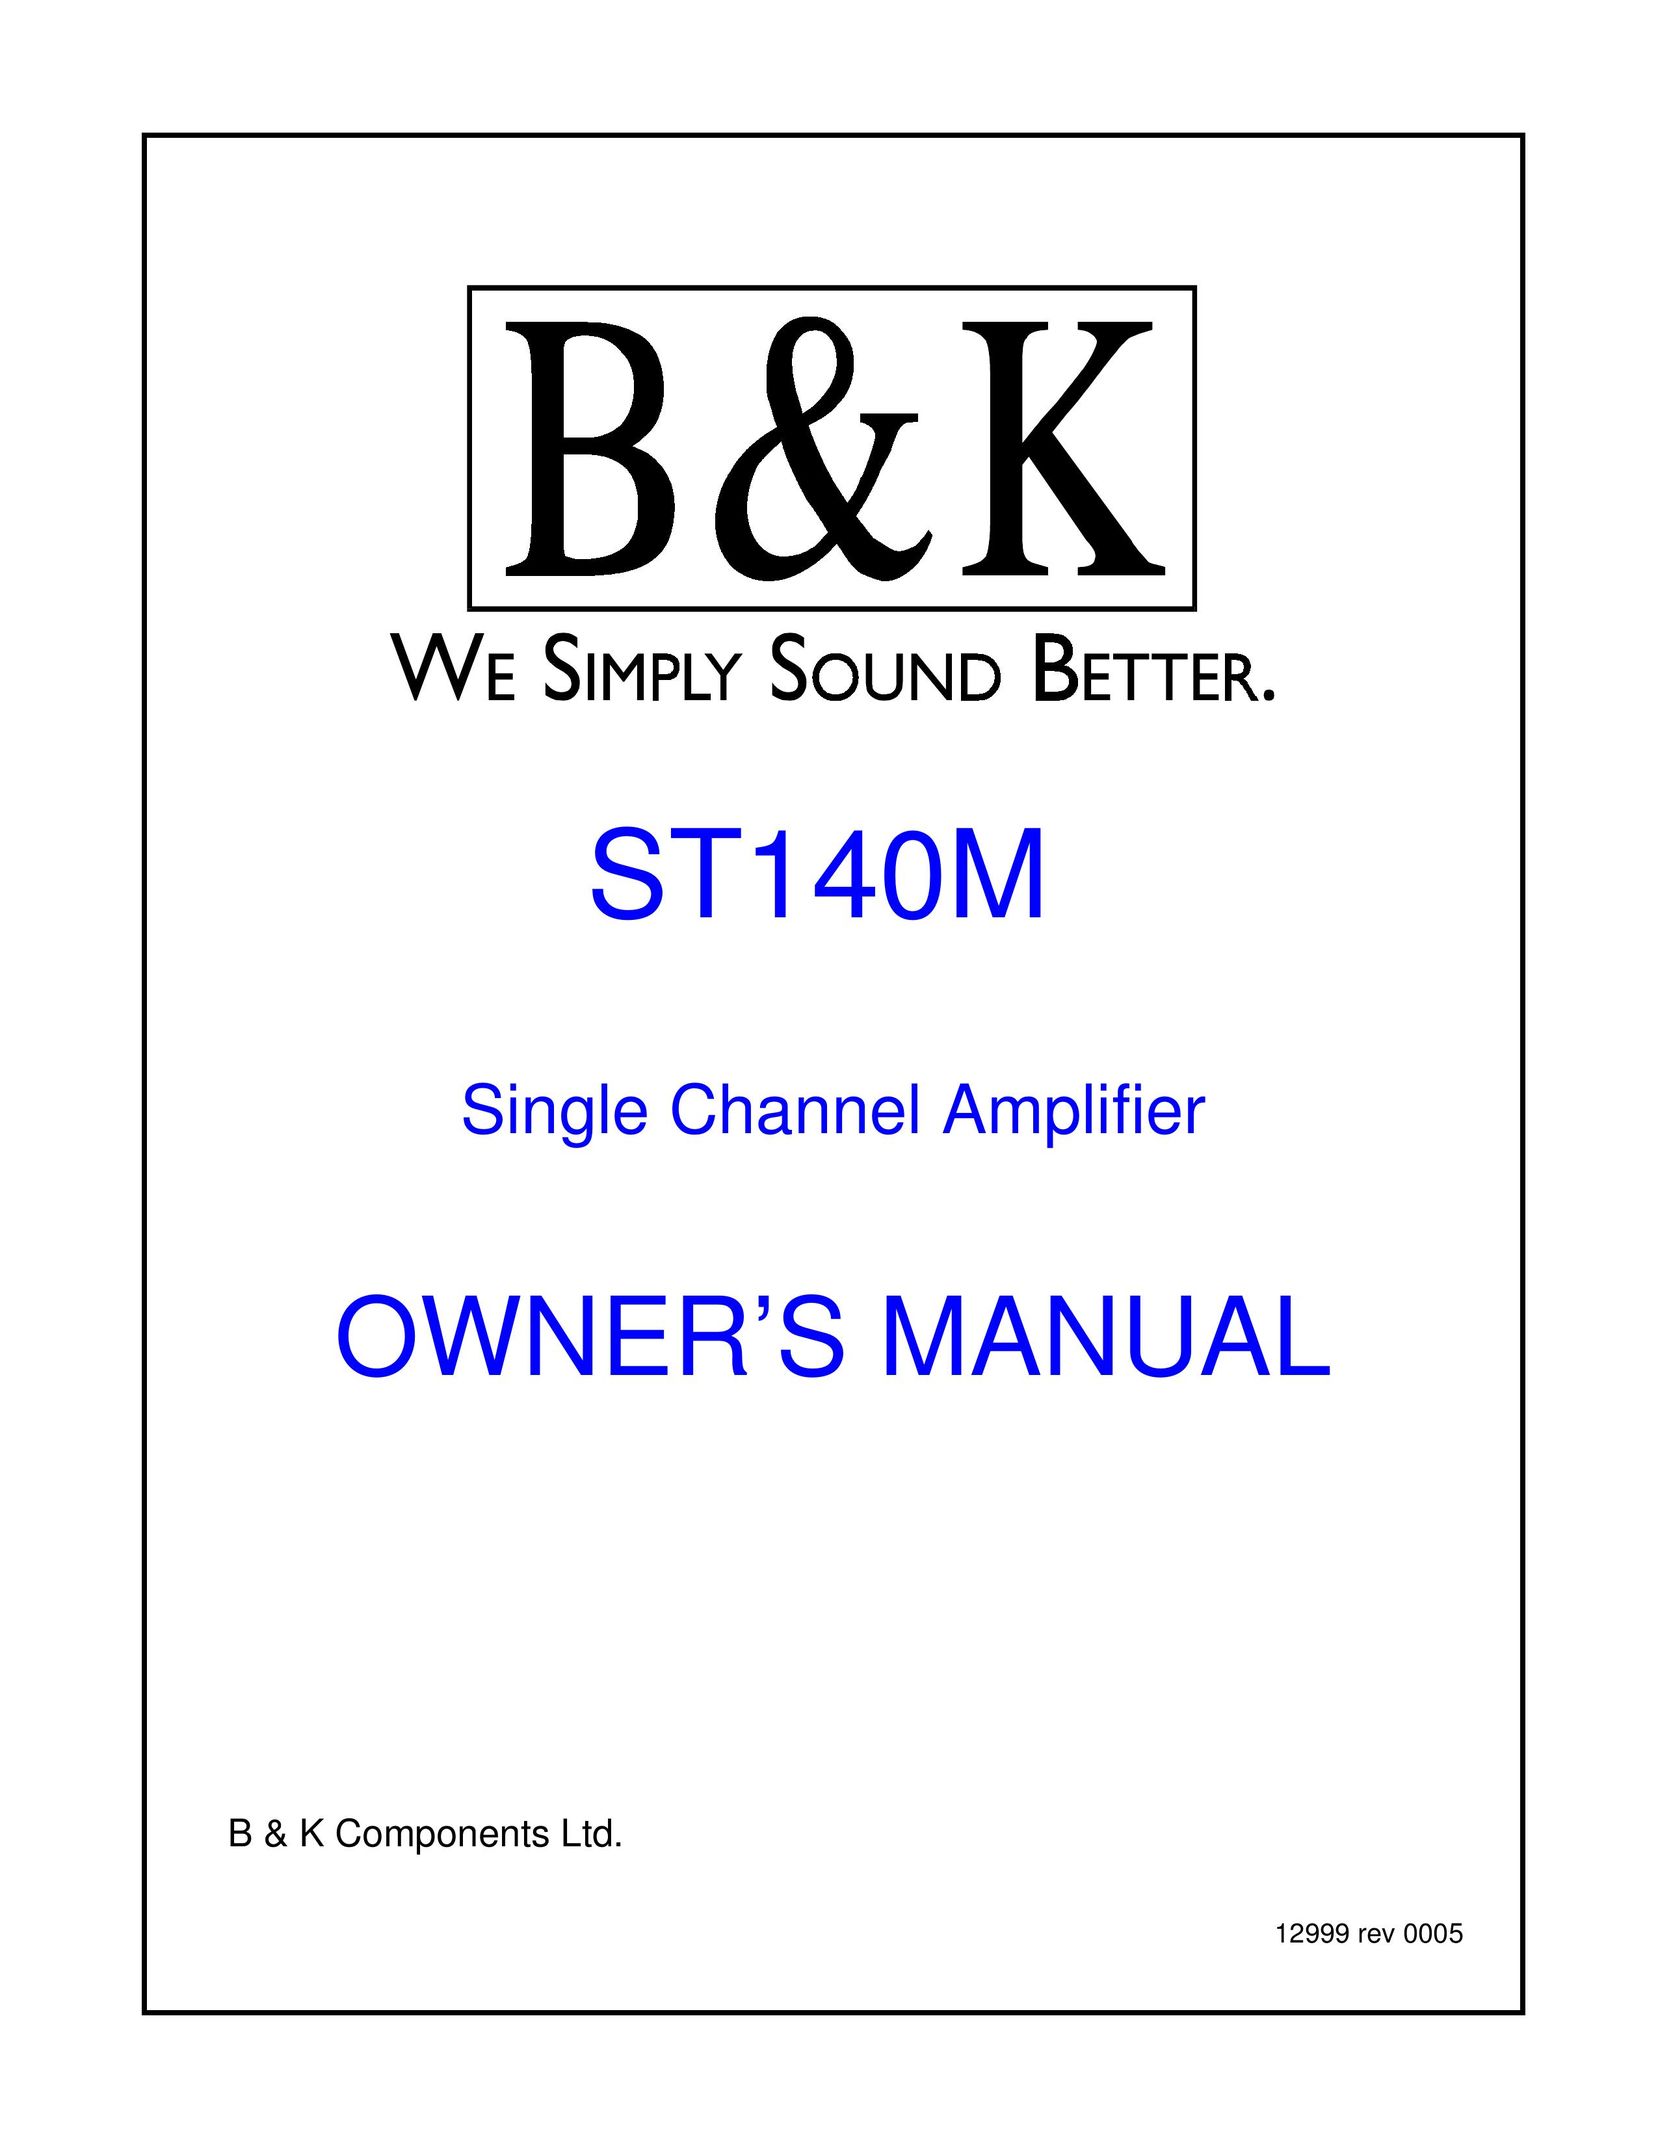 B&K ST140M Stereo Amplifier User Manual